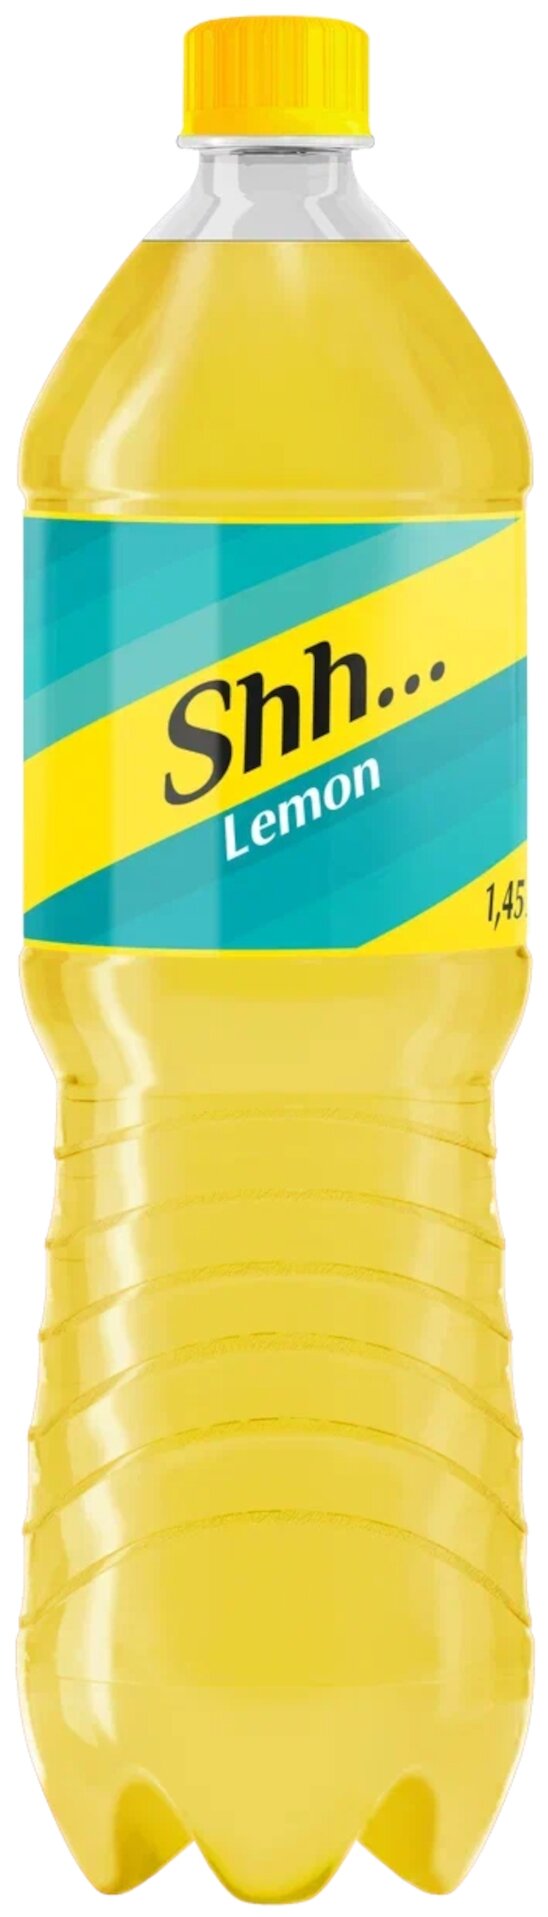 Напиток газированный Shh,,,1,45 л Lemon